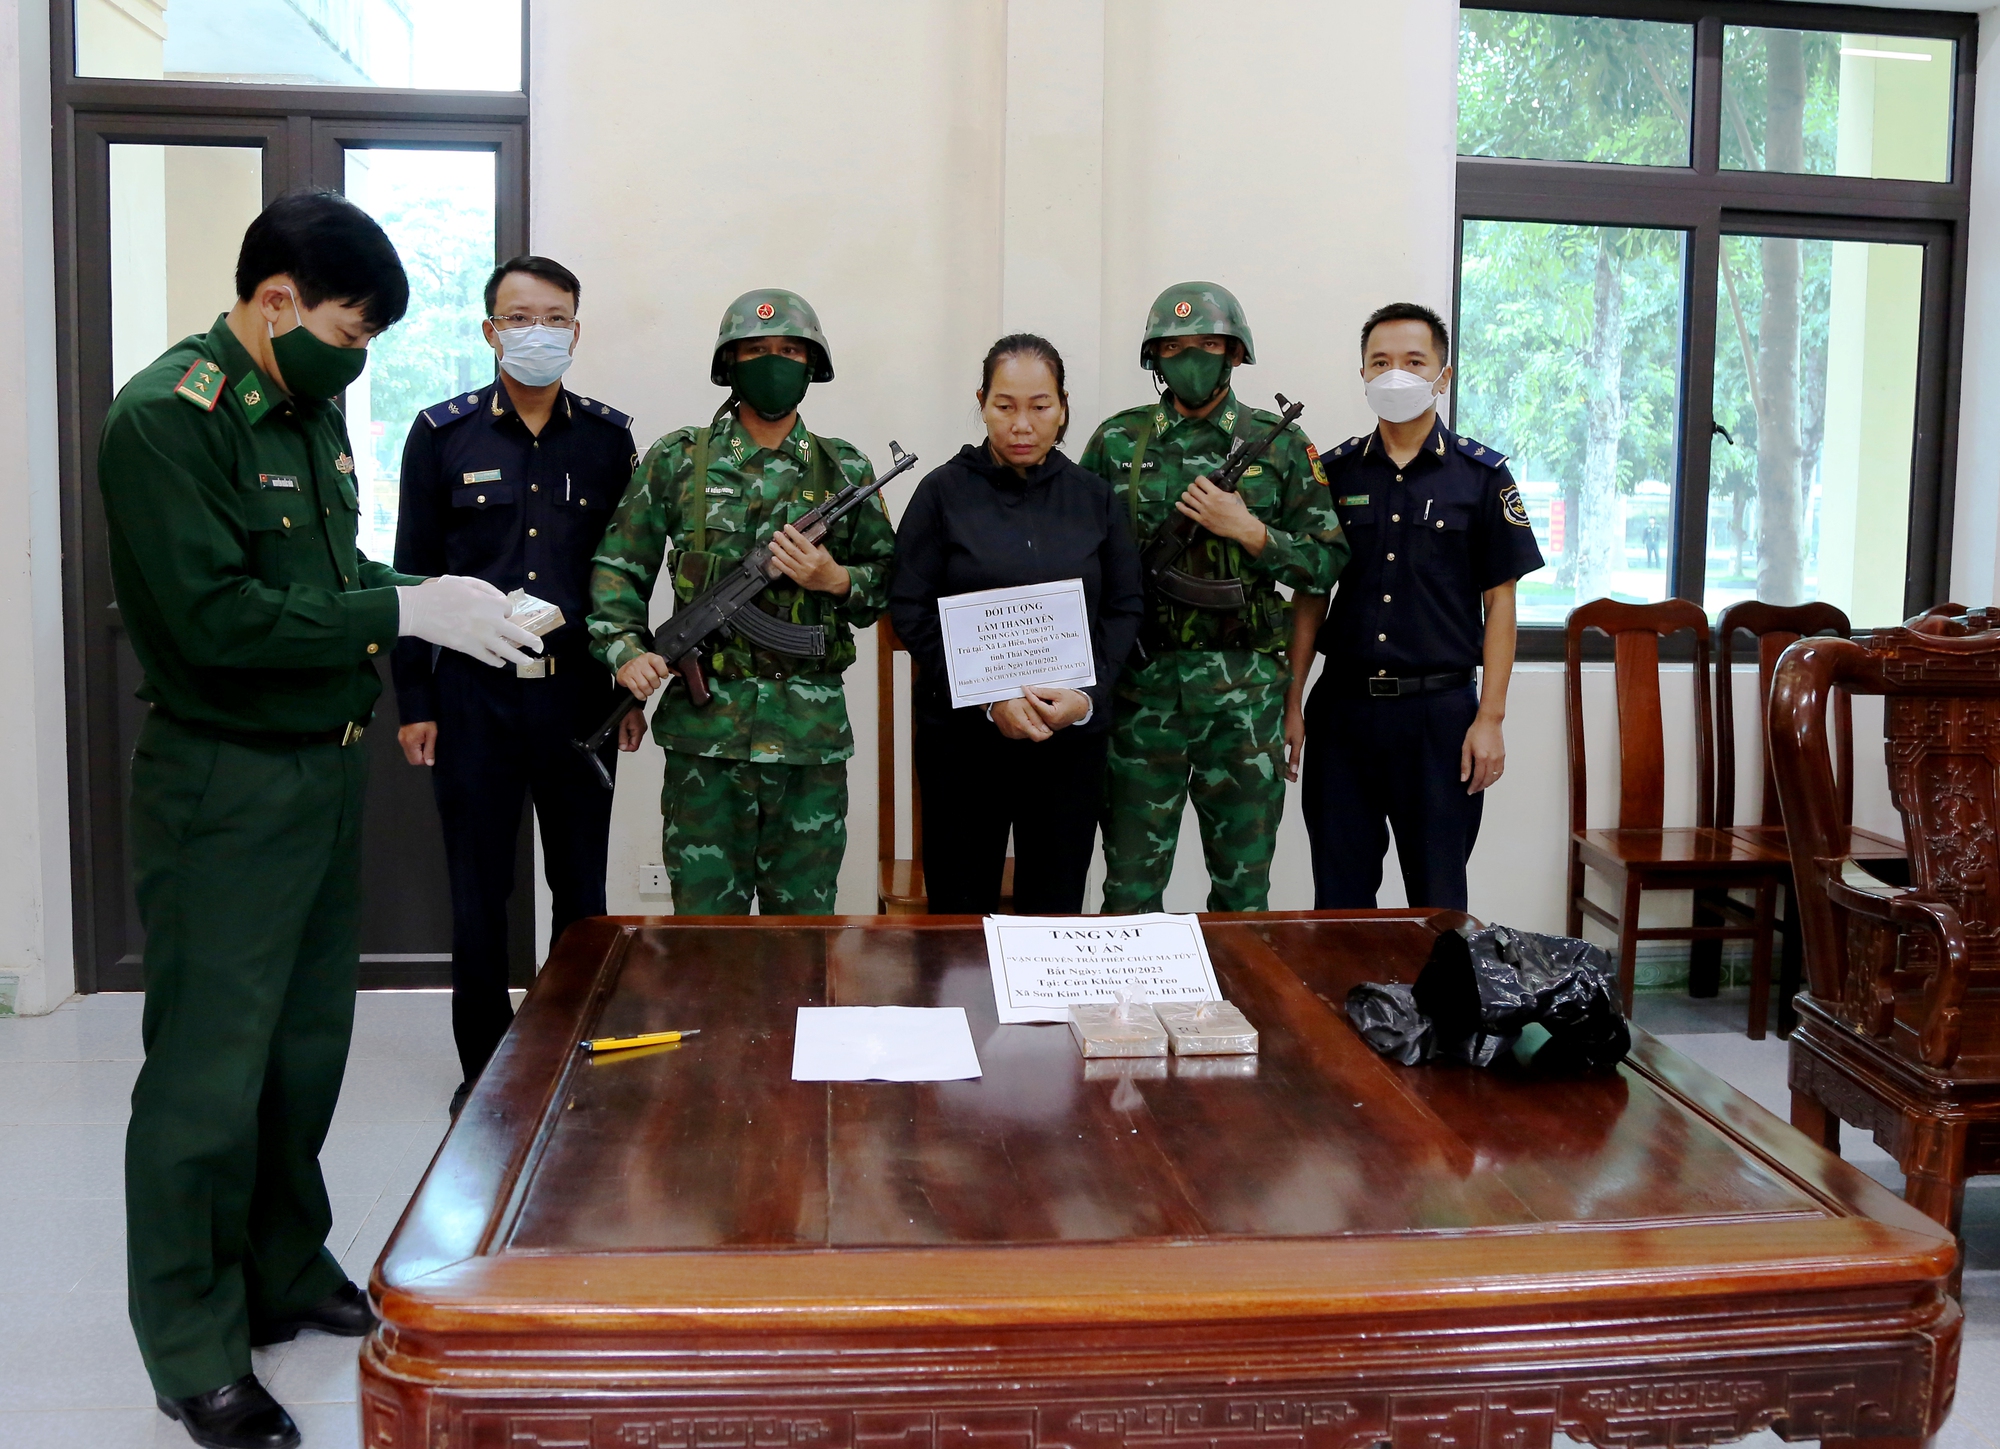 Cõng 3 bánh heroin từ Lào về Việt Nam, Lâm Thanh Yên bị bắt giữ - Ảnh 1.